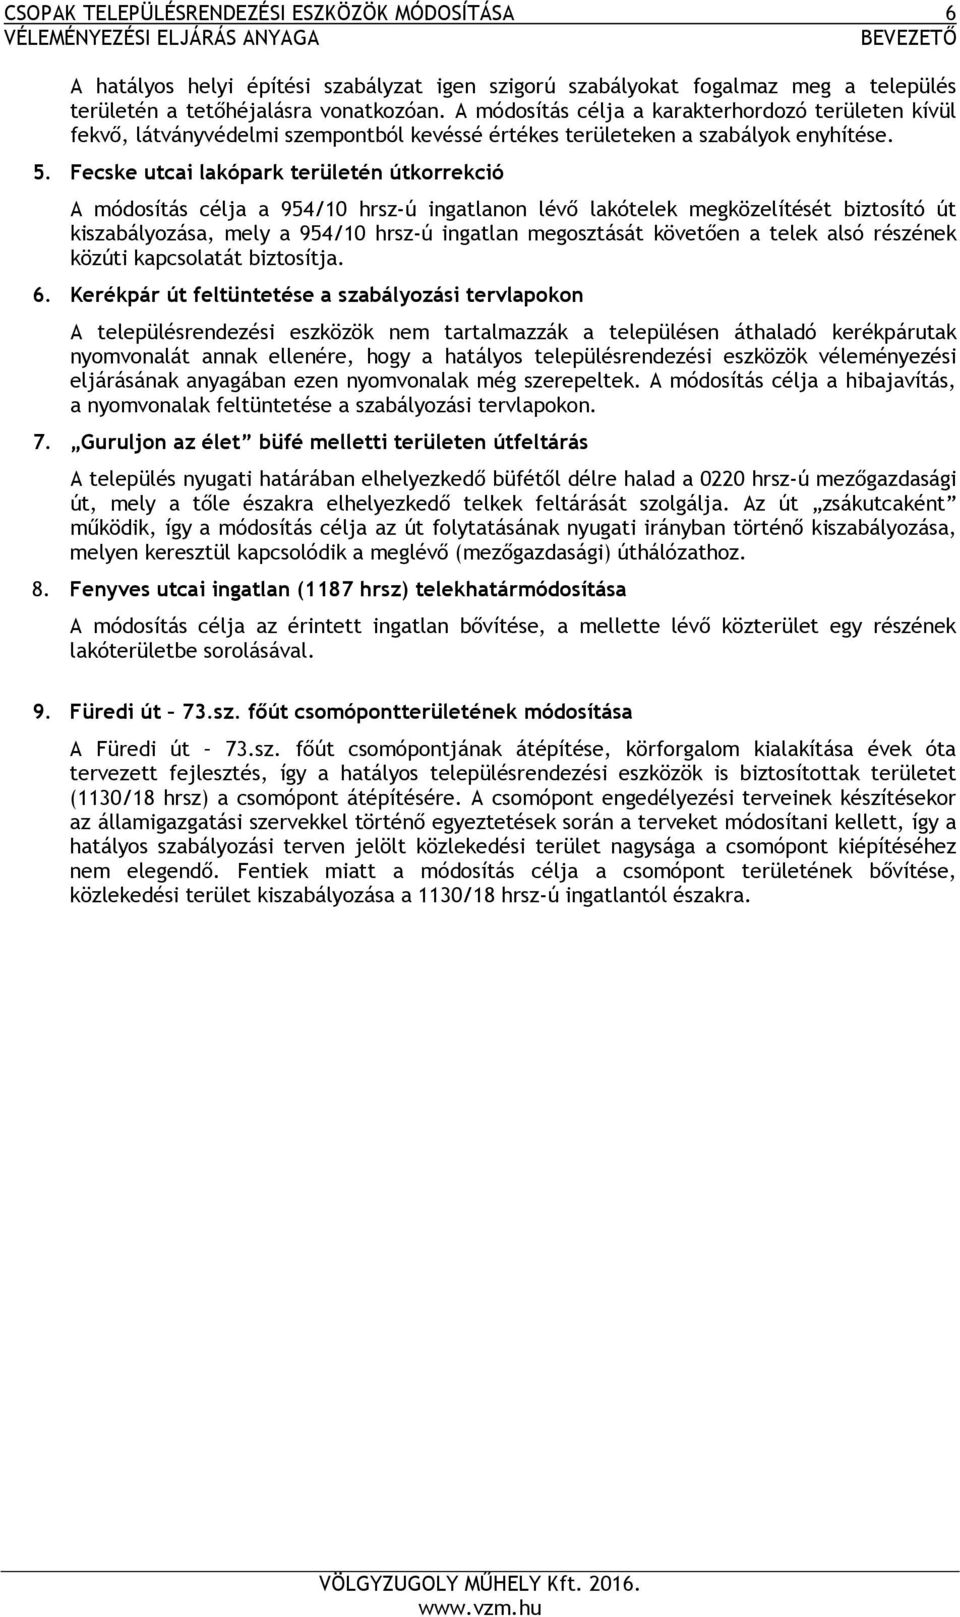 Fecske utcai lakópark területén útkorrekció A módosítás célja a 954/10 hrsz-ú ingatlanon lévő lakótelek megközelítését biztosító út kiszabályozása, mely a 954/10 hrsz-ú ingatlan megosztását követően